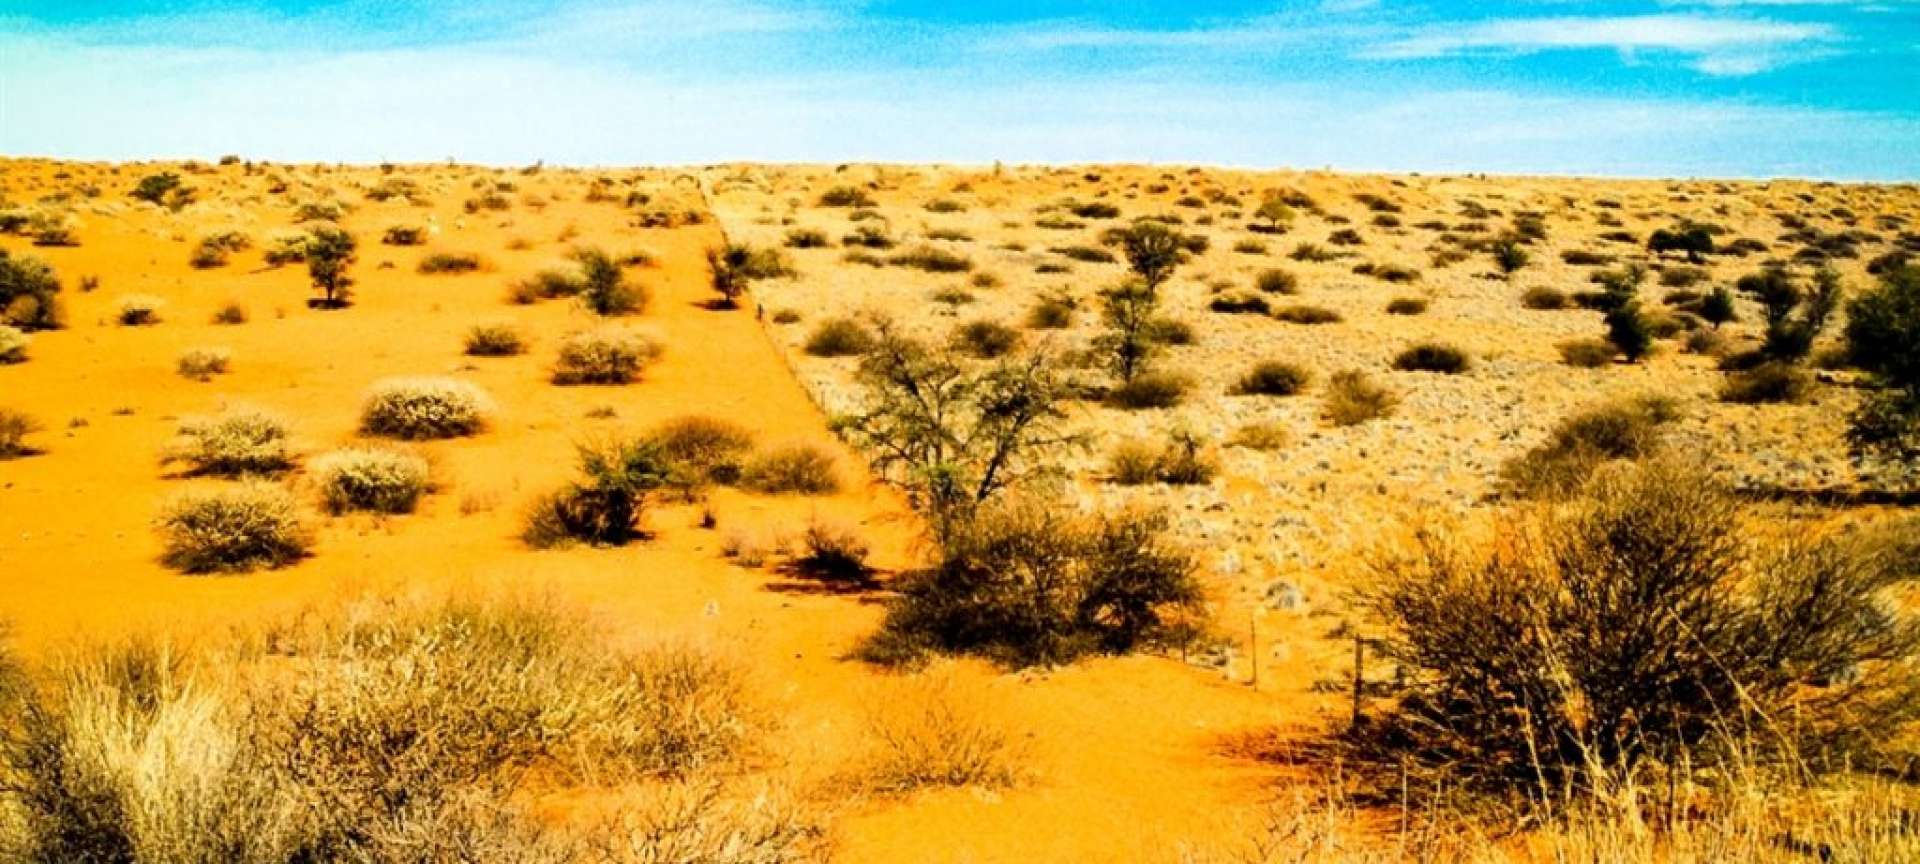 Фрагменты произведений о полупустыне. Пустыня Калахари растения. Пустыни и полупустыни животные. Пустыни и полупустыни Африки животные. Полупустыни России растения и животные.